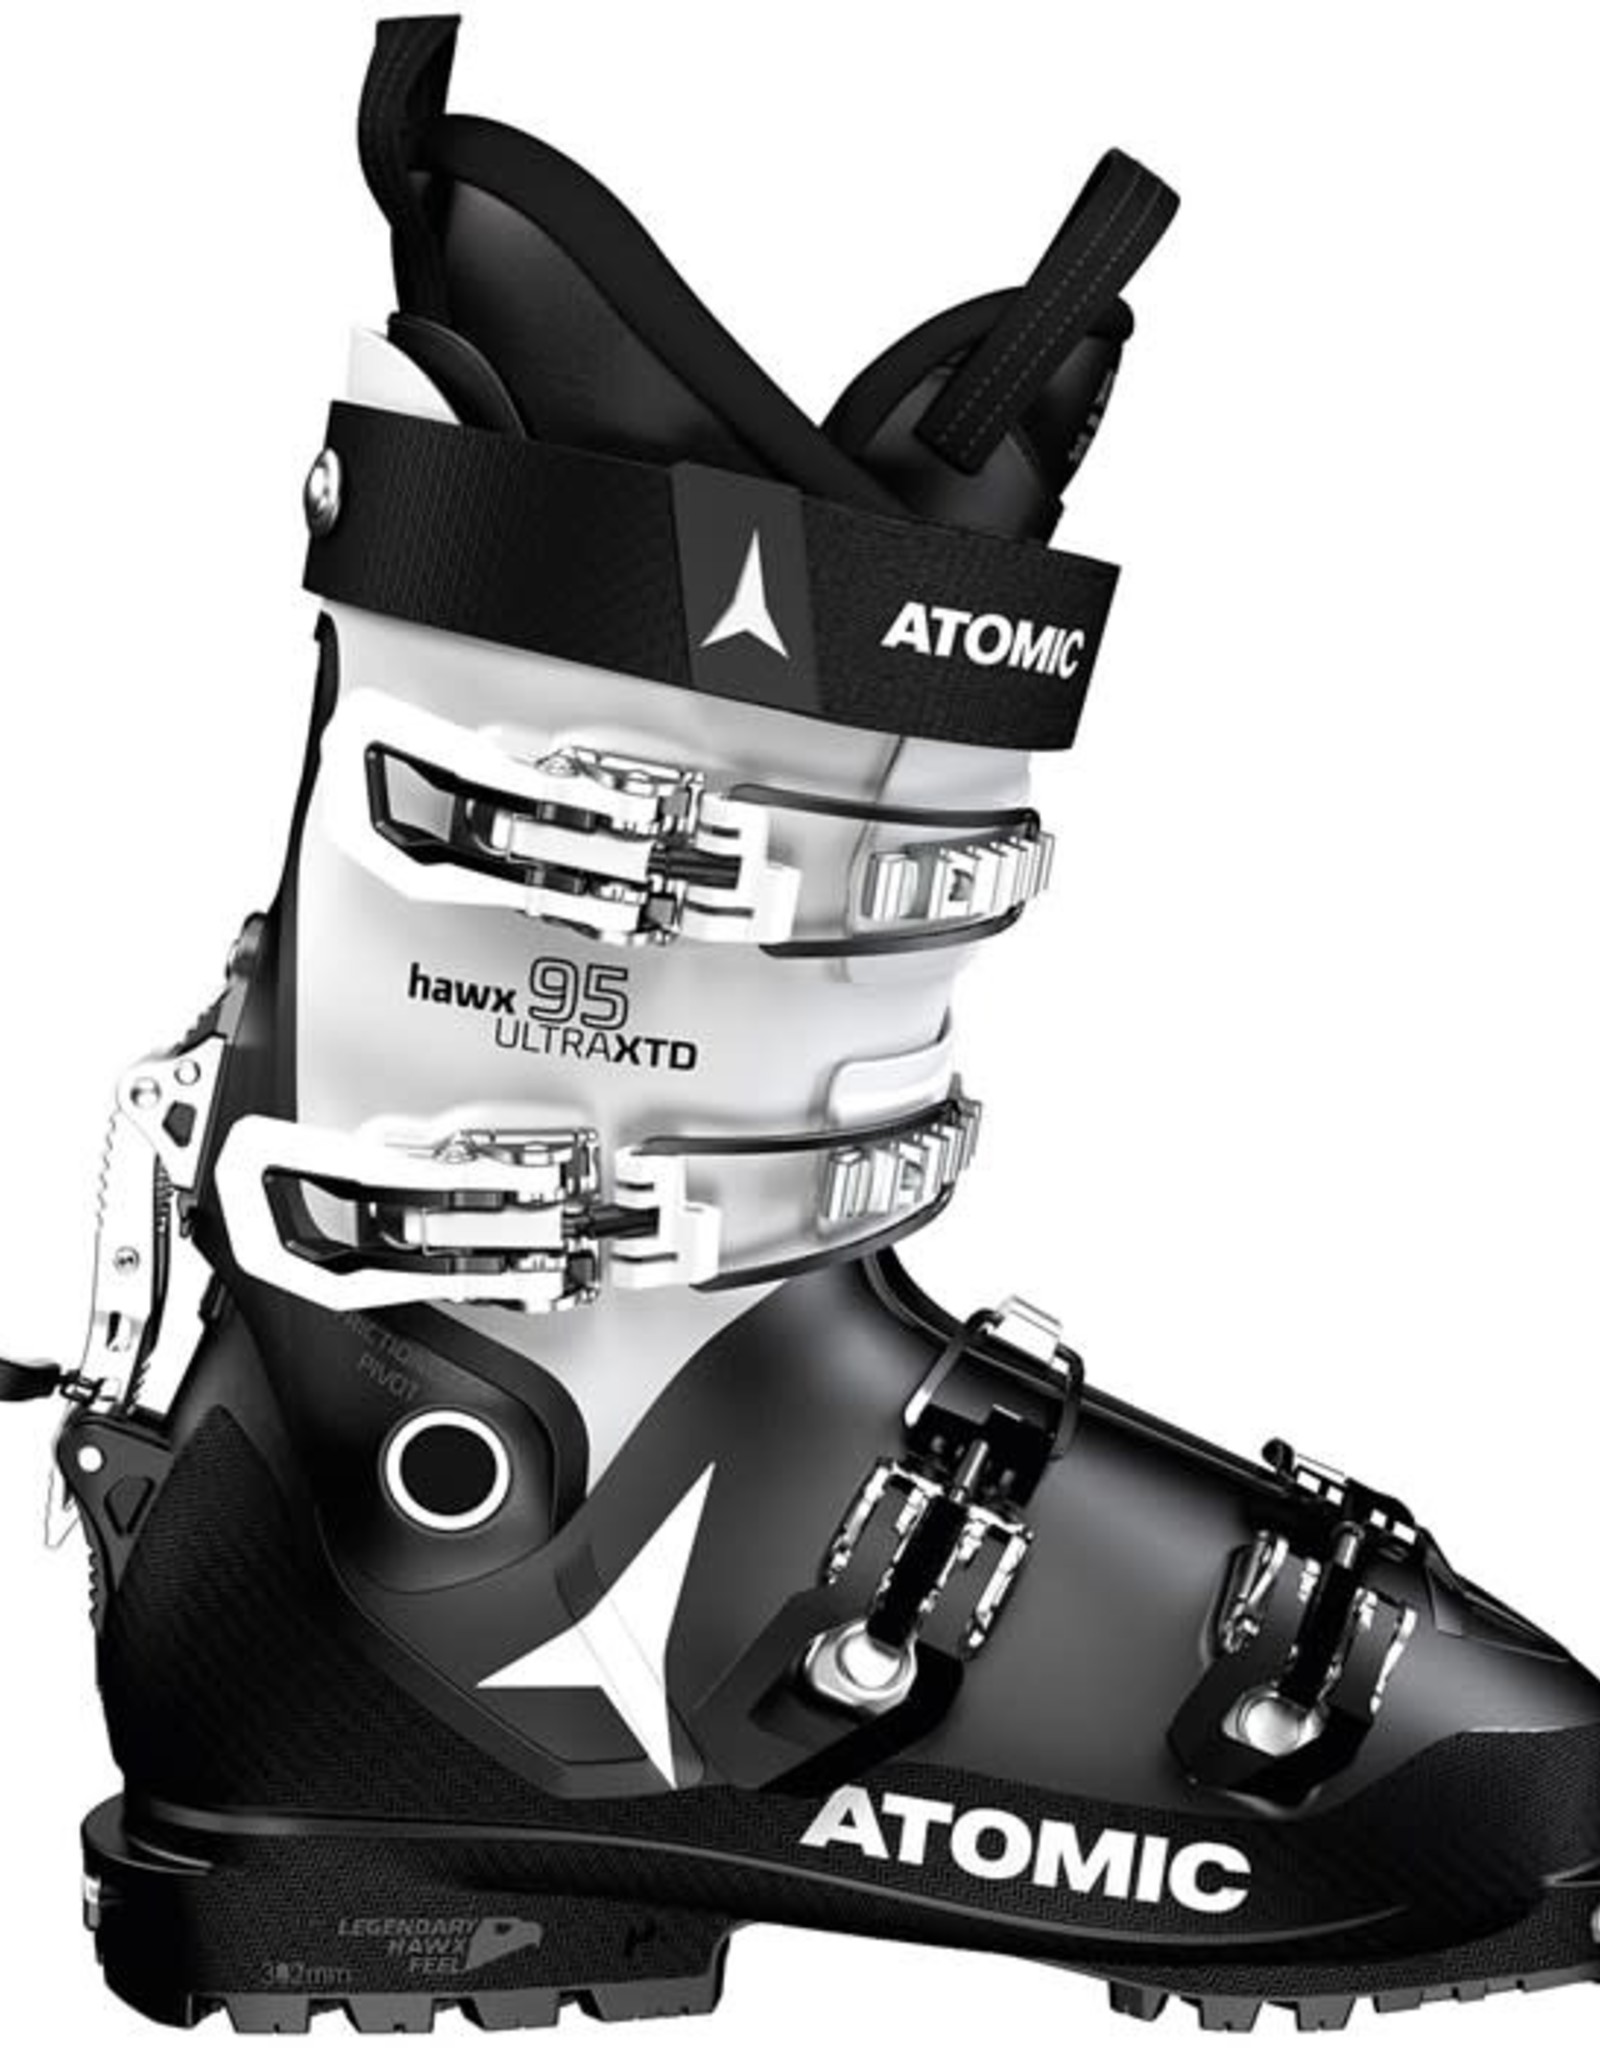 ATOMIC ATOMIC Ski Boots HAWX ULTRA XTD 95 W CT GW (21/22)